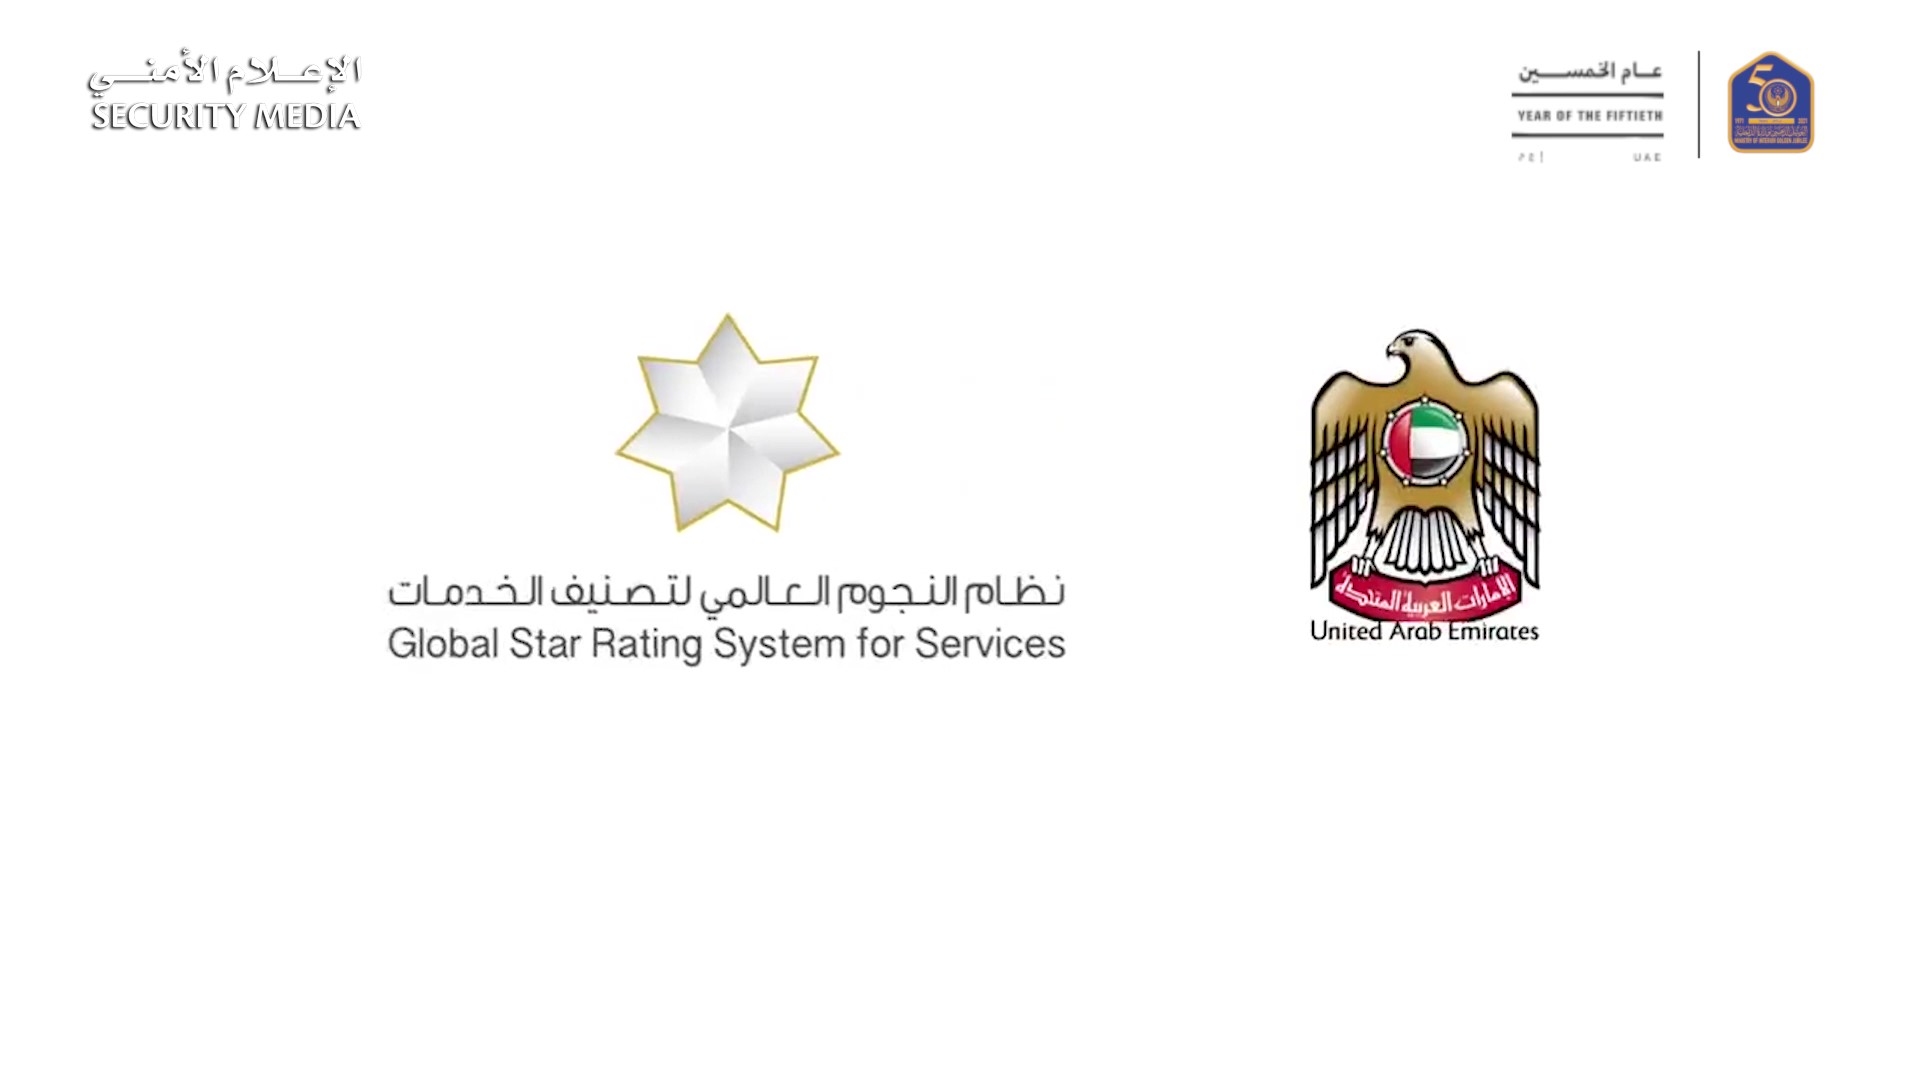 الداخلية تحقق إنجازاً جديداً في تقييم مراكز الخدمة وفق "نظام النجوم العالمي لتصنيف الخدمات"